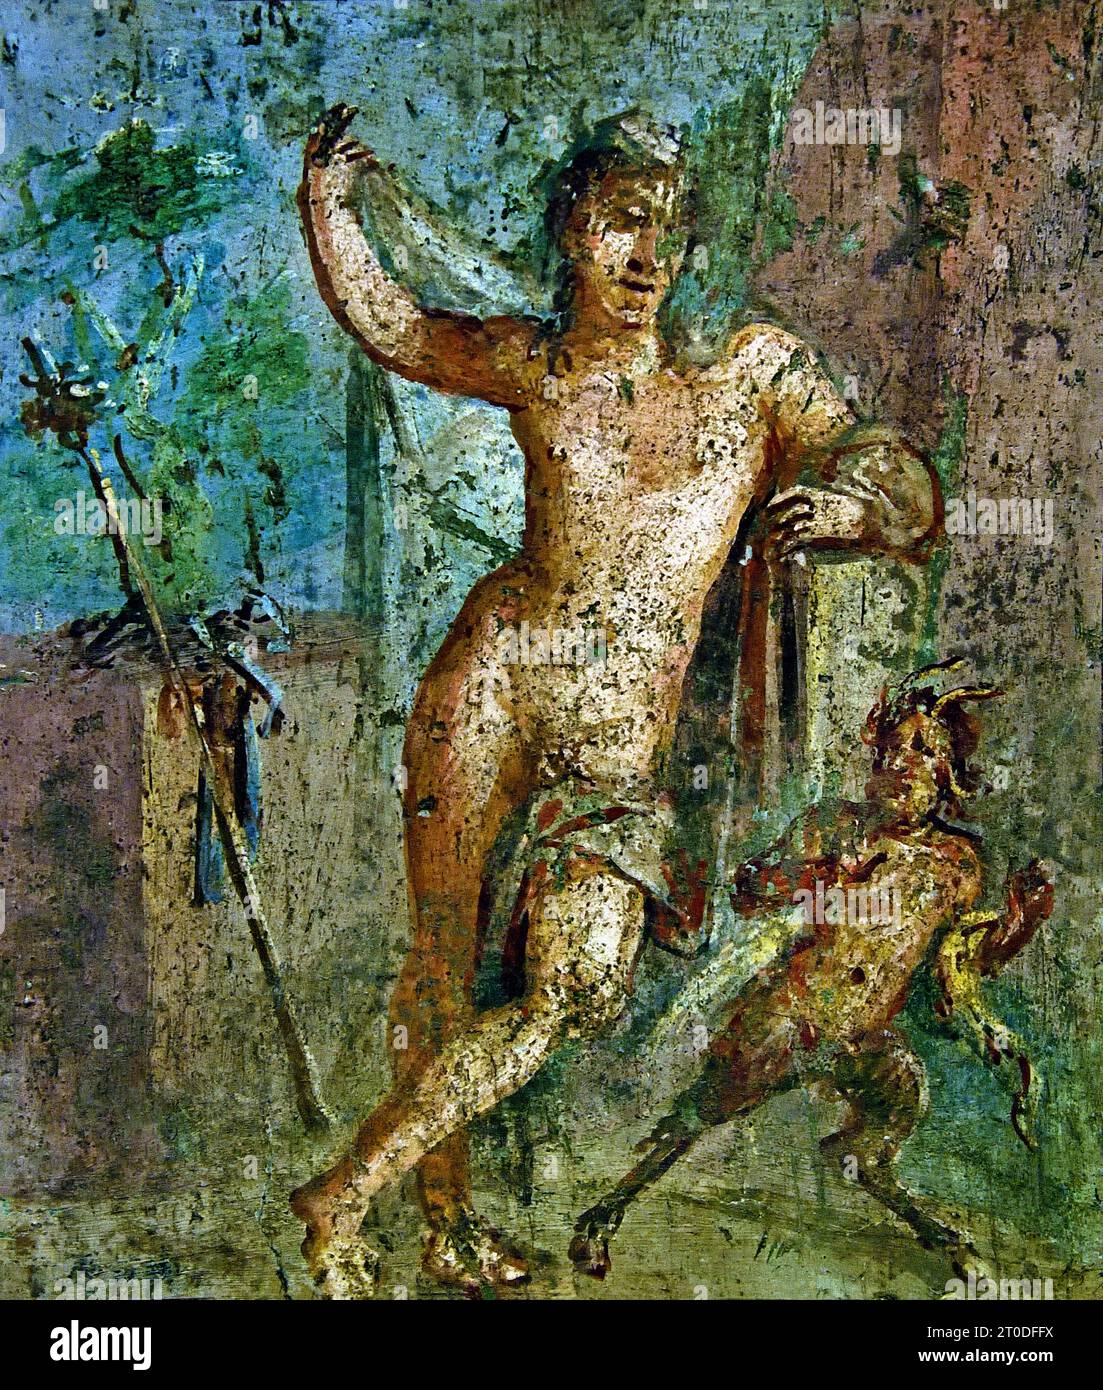 Ermafrodite 62-79 d.C. fresco Pompei città romana si trova vicino a Napoli, nella regione Campania d'Italia. Pompei fu sepolta sotto 4-6 m di cenere vulcanica e pomice nell'eruzione del Vesuvio nel 79 d.C. Italia (l'uomo è appoggiato contro un muro roccioso e si rivela ad un Panisco, che alza le braccia a sorpresa nudo di Ermafrodito, Foto Stock